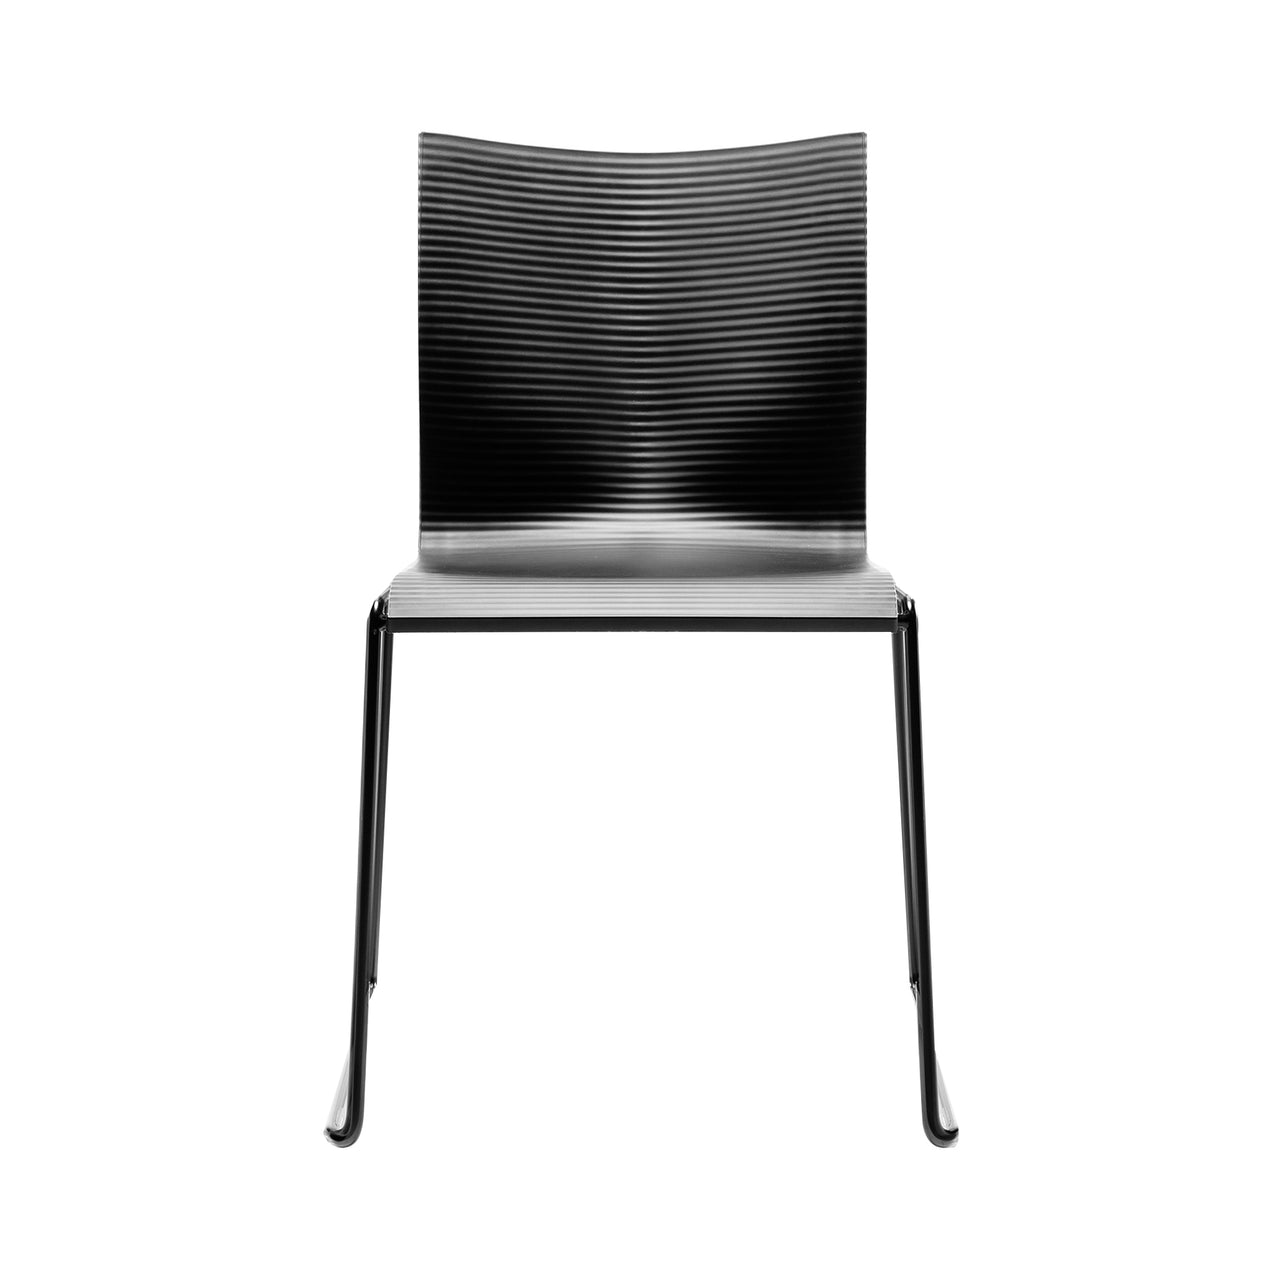 Chairik XL 127 Chair: Sled Base + Pur - Black + Powder Coated Black